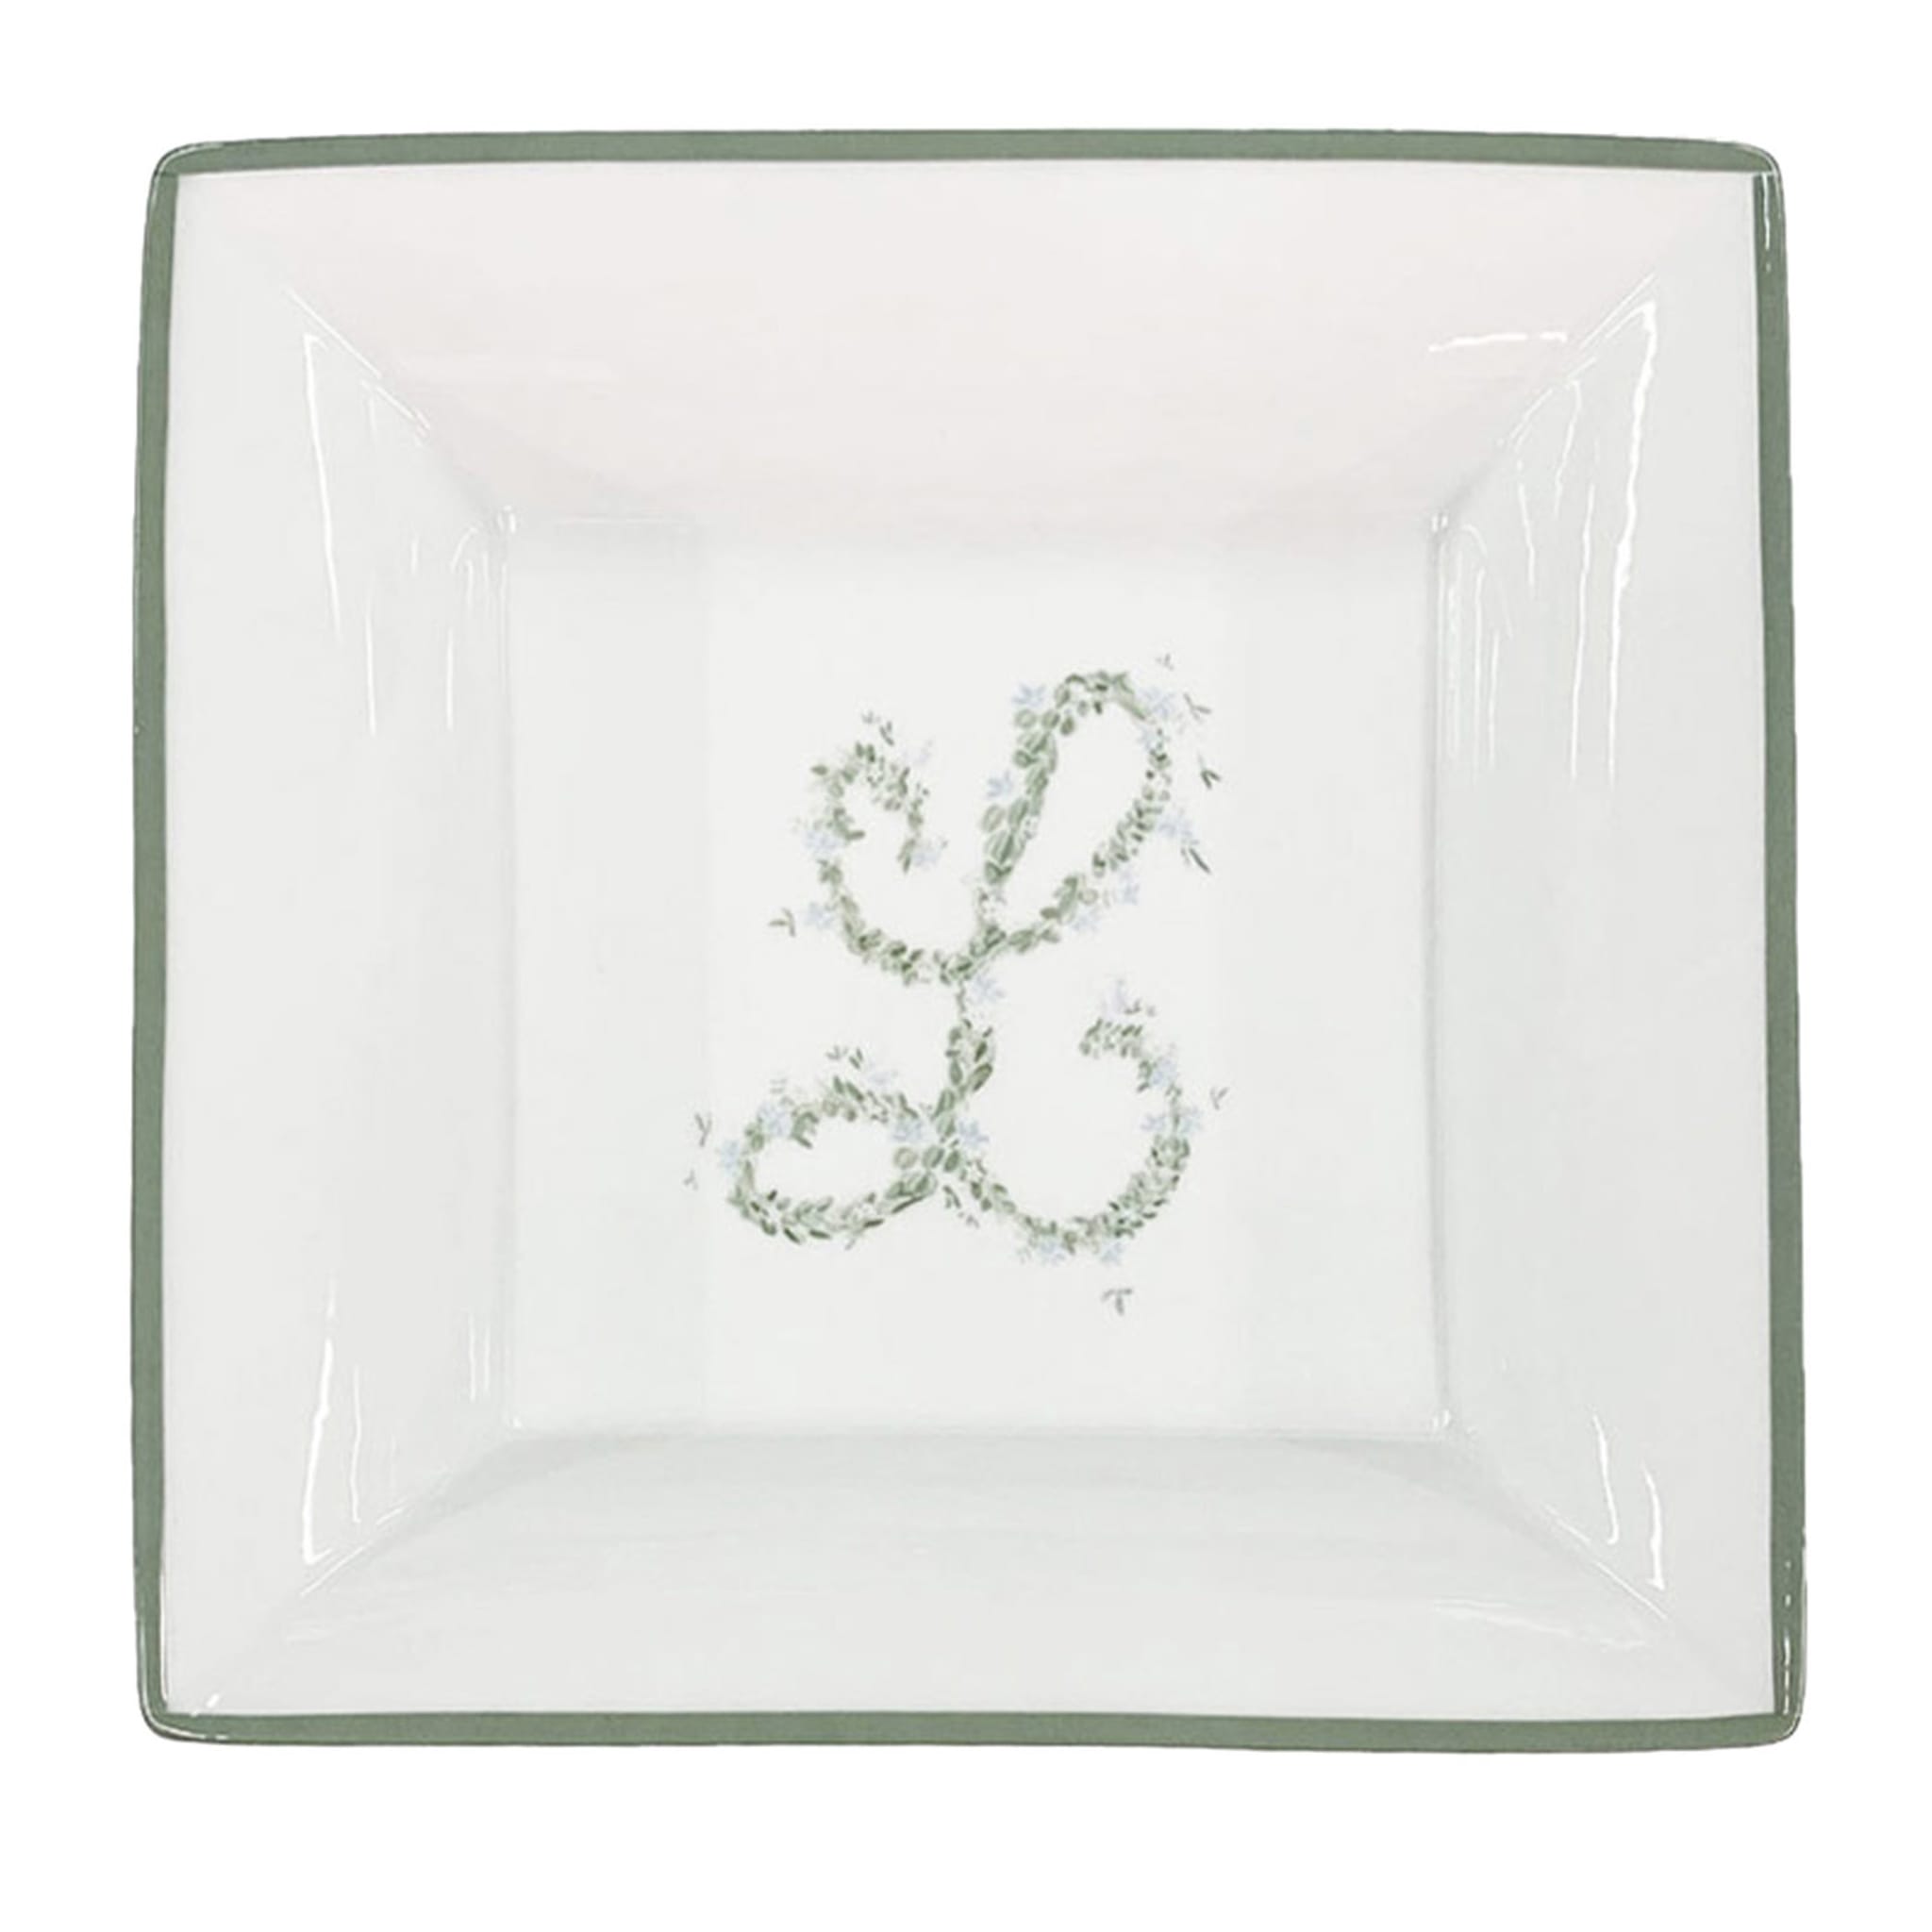 L - Vassoio portaoggetti quadrato bianco e verde salvia #1 Luisa Beccaria